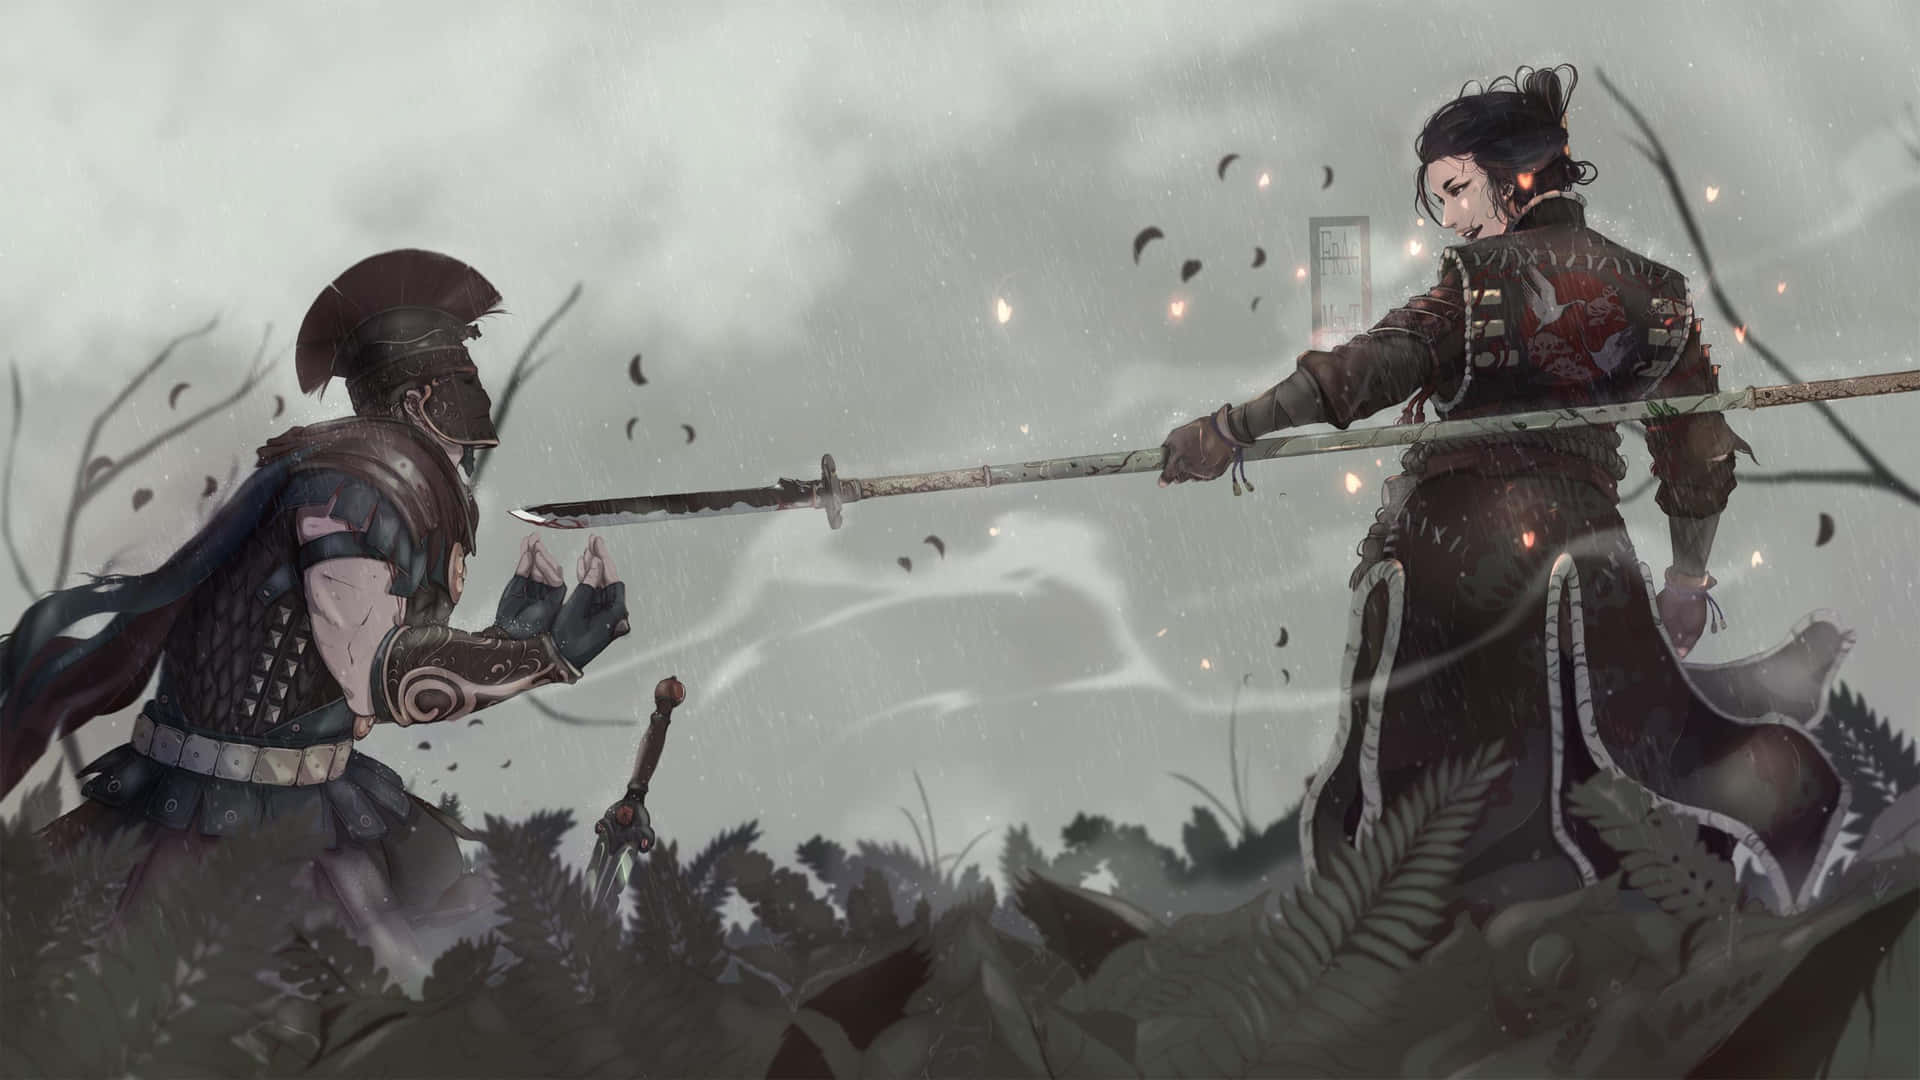 Samuraifeminina Para Honra Versus Inimigo. Papel de Parede